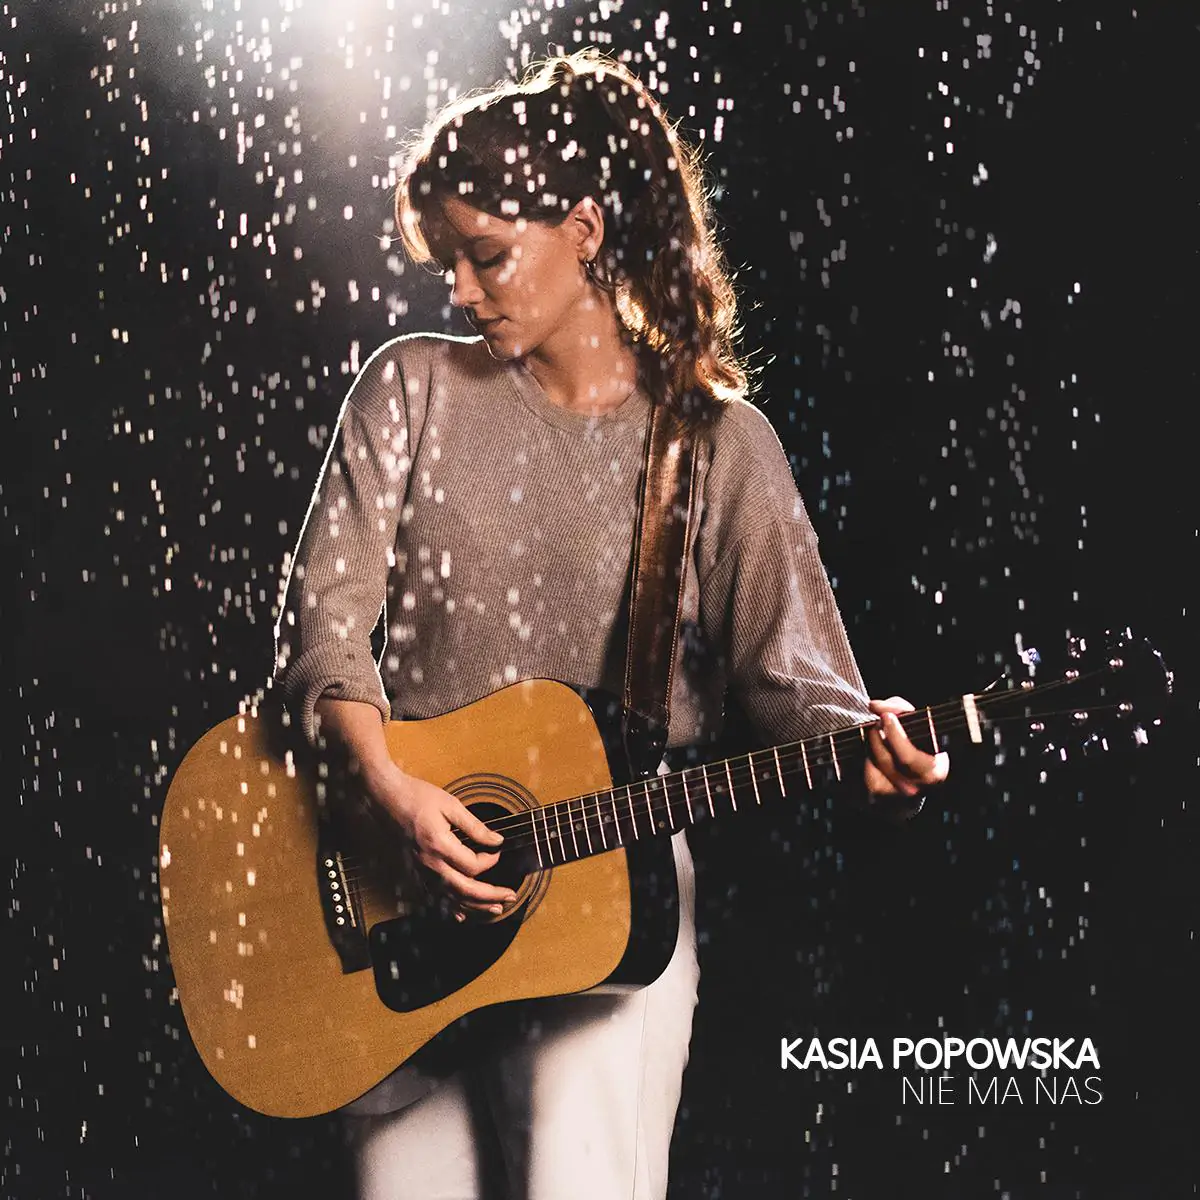 Kasia Popowska - premiera singla "Nie ma nas"